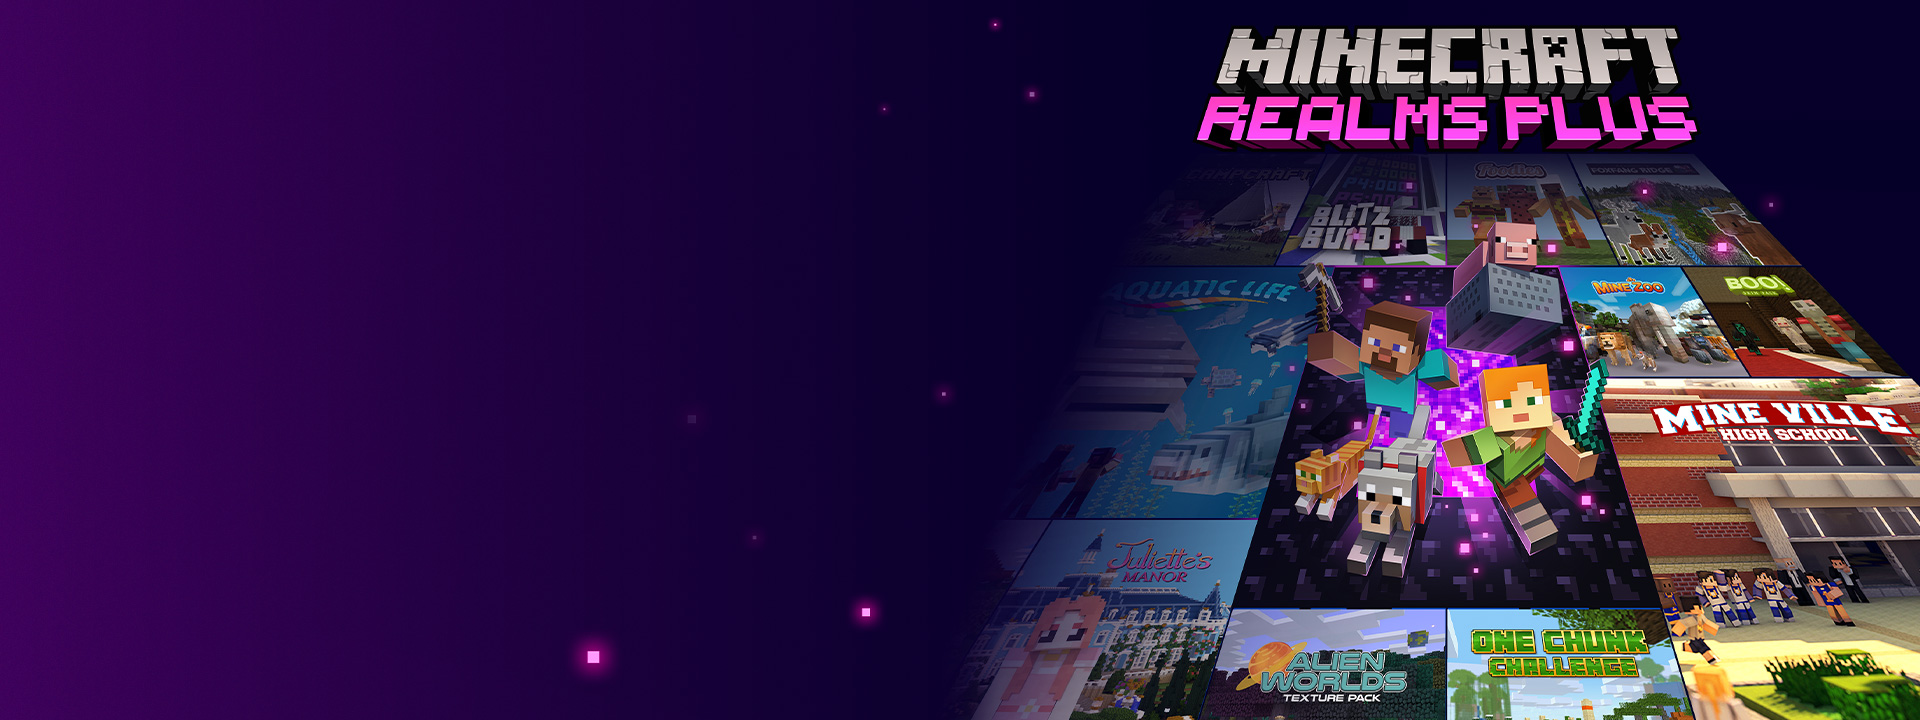 Minecraft Realms Plus, personajes de Minecraft saliendo de un portal Nether con otras imágenes de caja a su lado